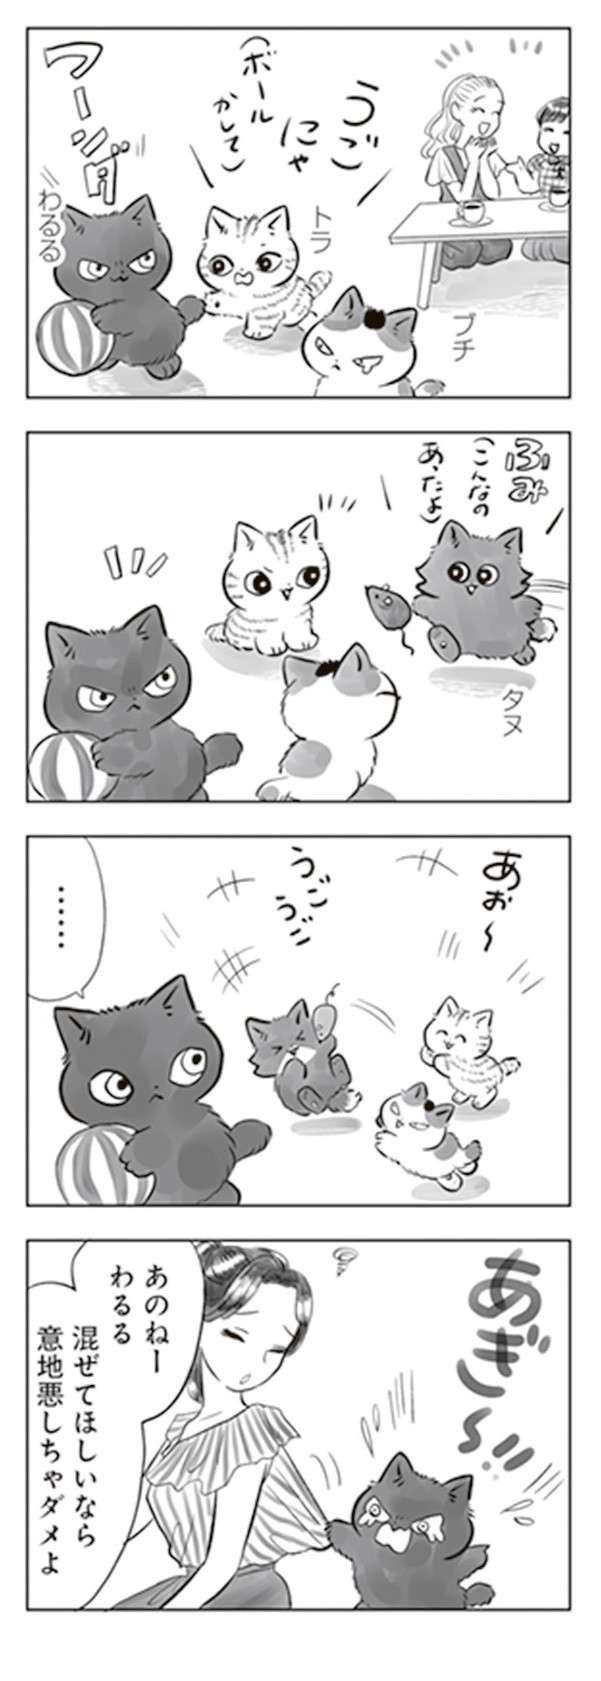 軒下で生まれ保護された子猫。里親が見つかったがなかなかやんちゃで...／トラと陽子 tora_yoko9-5.jpg